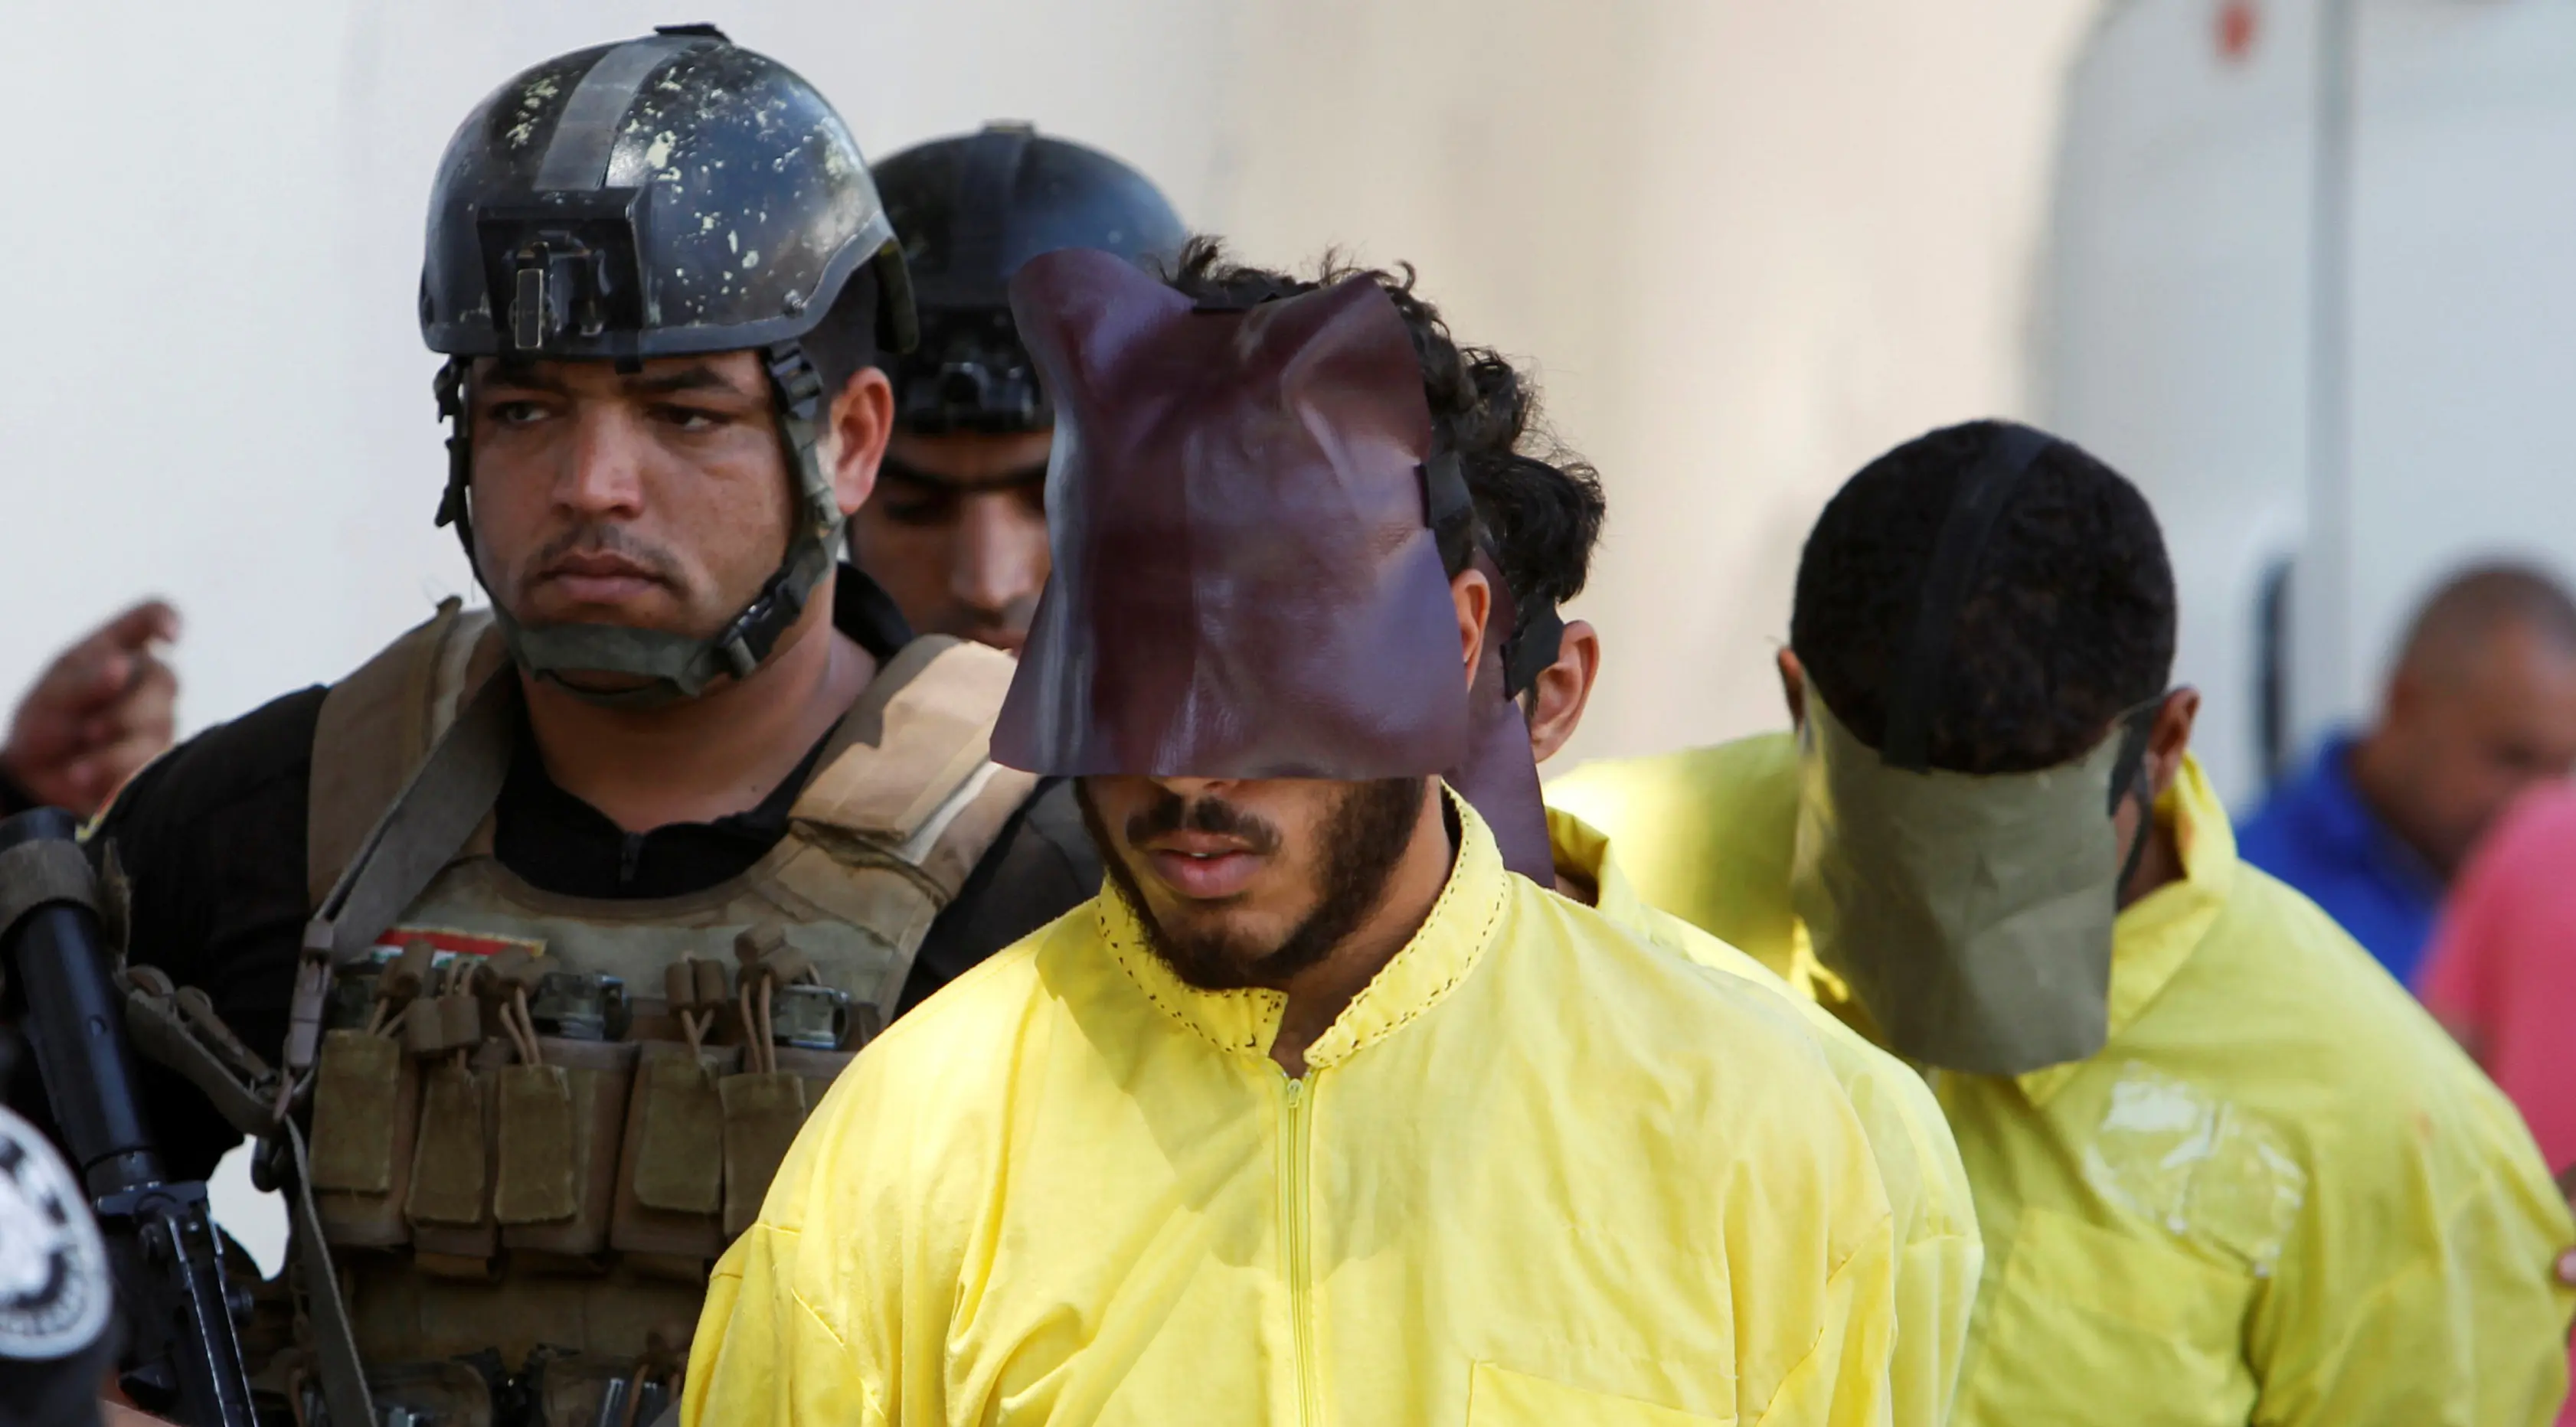 Militer Irak mengawal sejumlah pria yang diduga militan ISIS saat akan konferensi pers di Baghdad, Irak (7/9). Militer Irak menangkap beberapa militan ISIS usai kembali merebut wilayah yang dikuasai. (REUTERS/Khalid al Mousily)